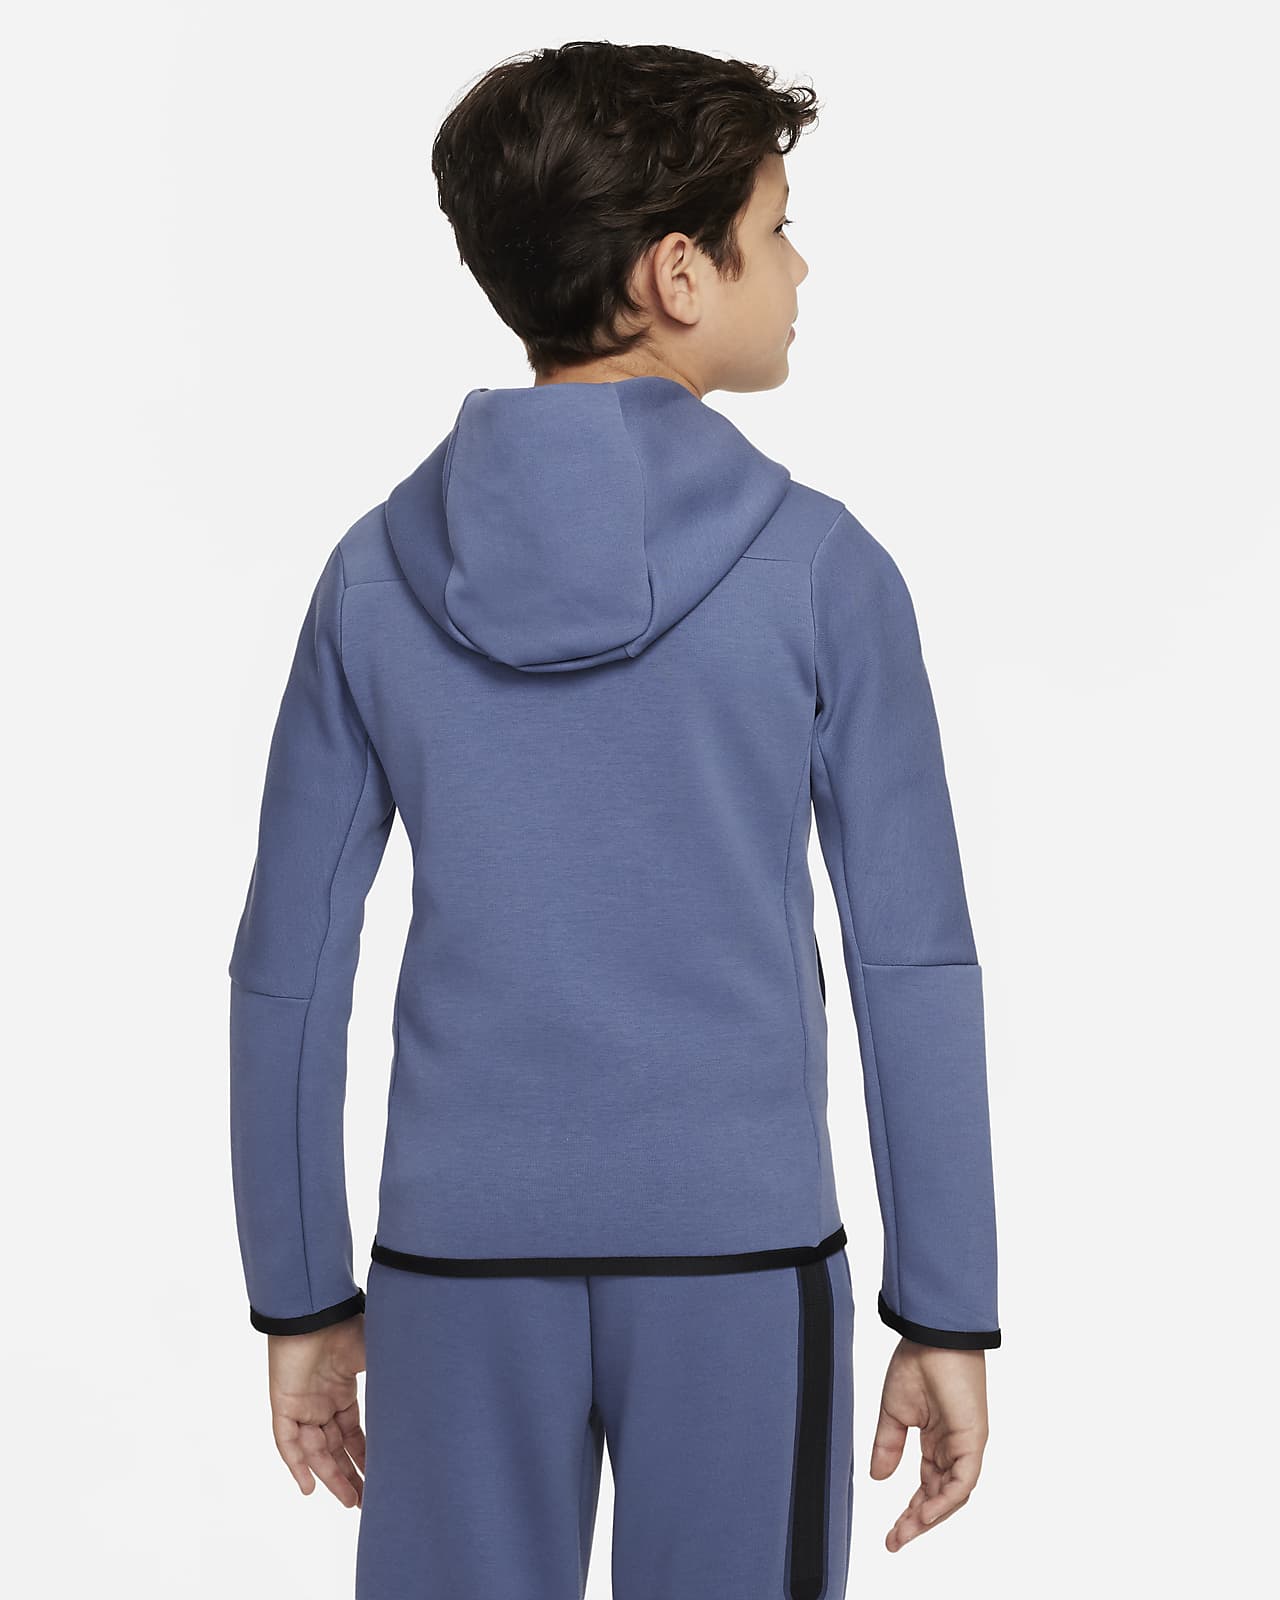 Nike Sportswear Tech Fleece Big Kids' (Boys') Full-Zip Hoodie.